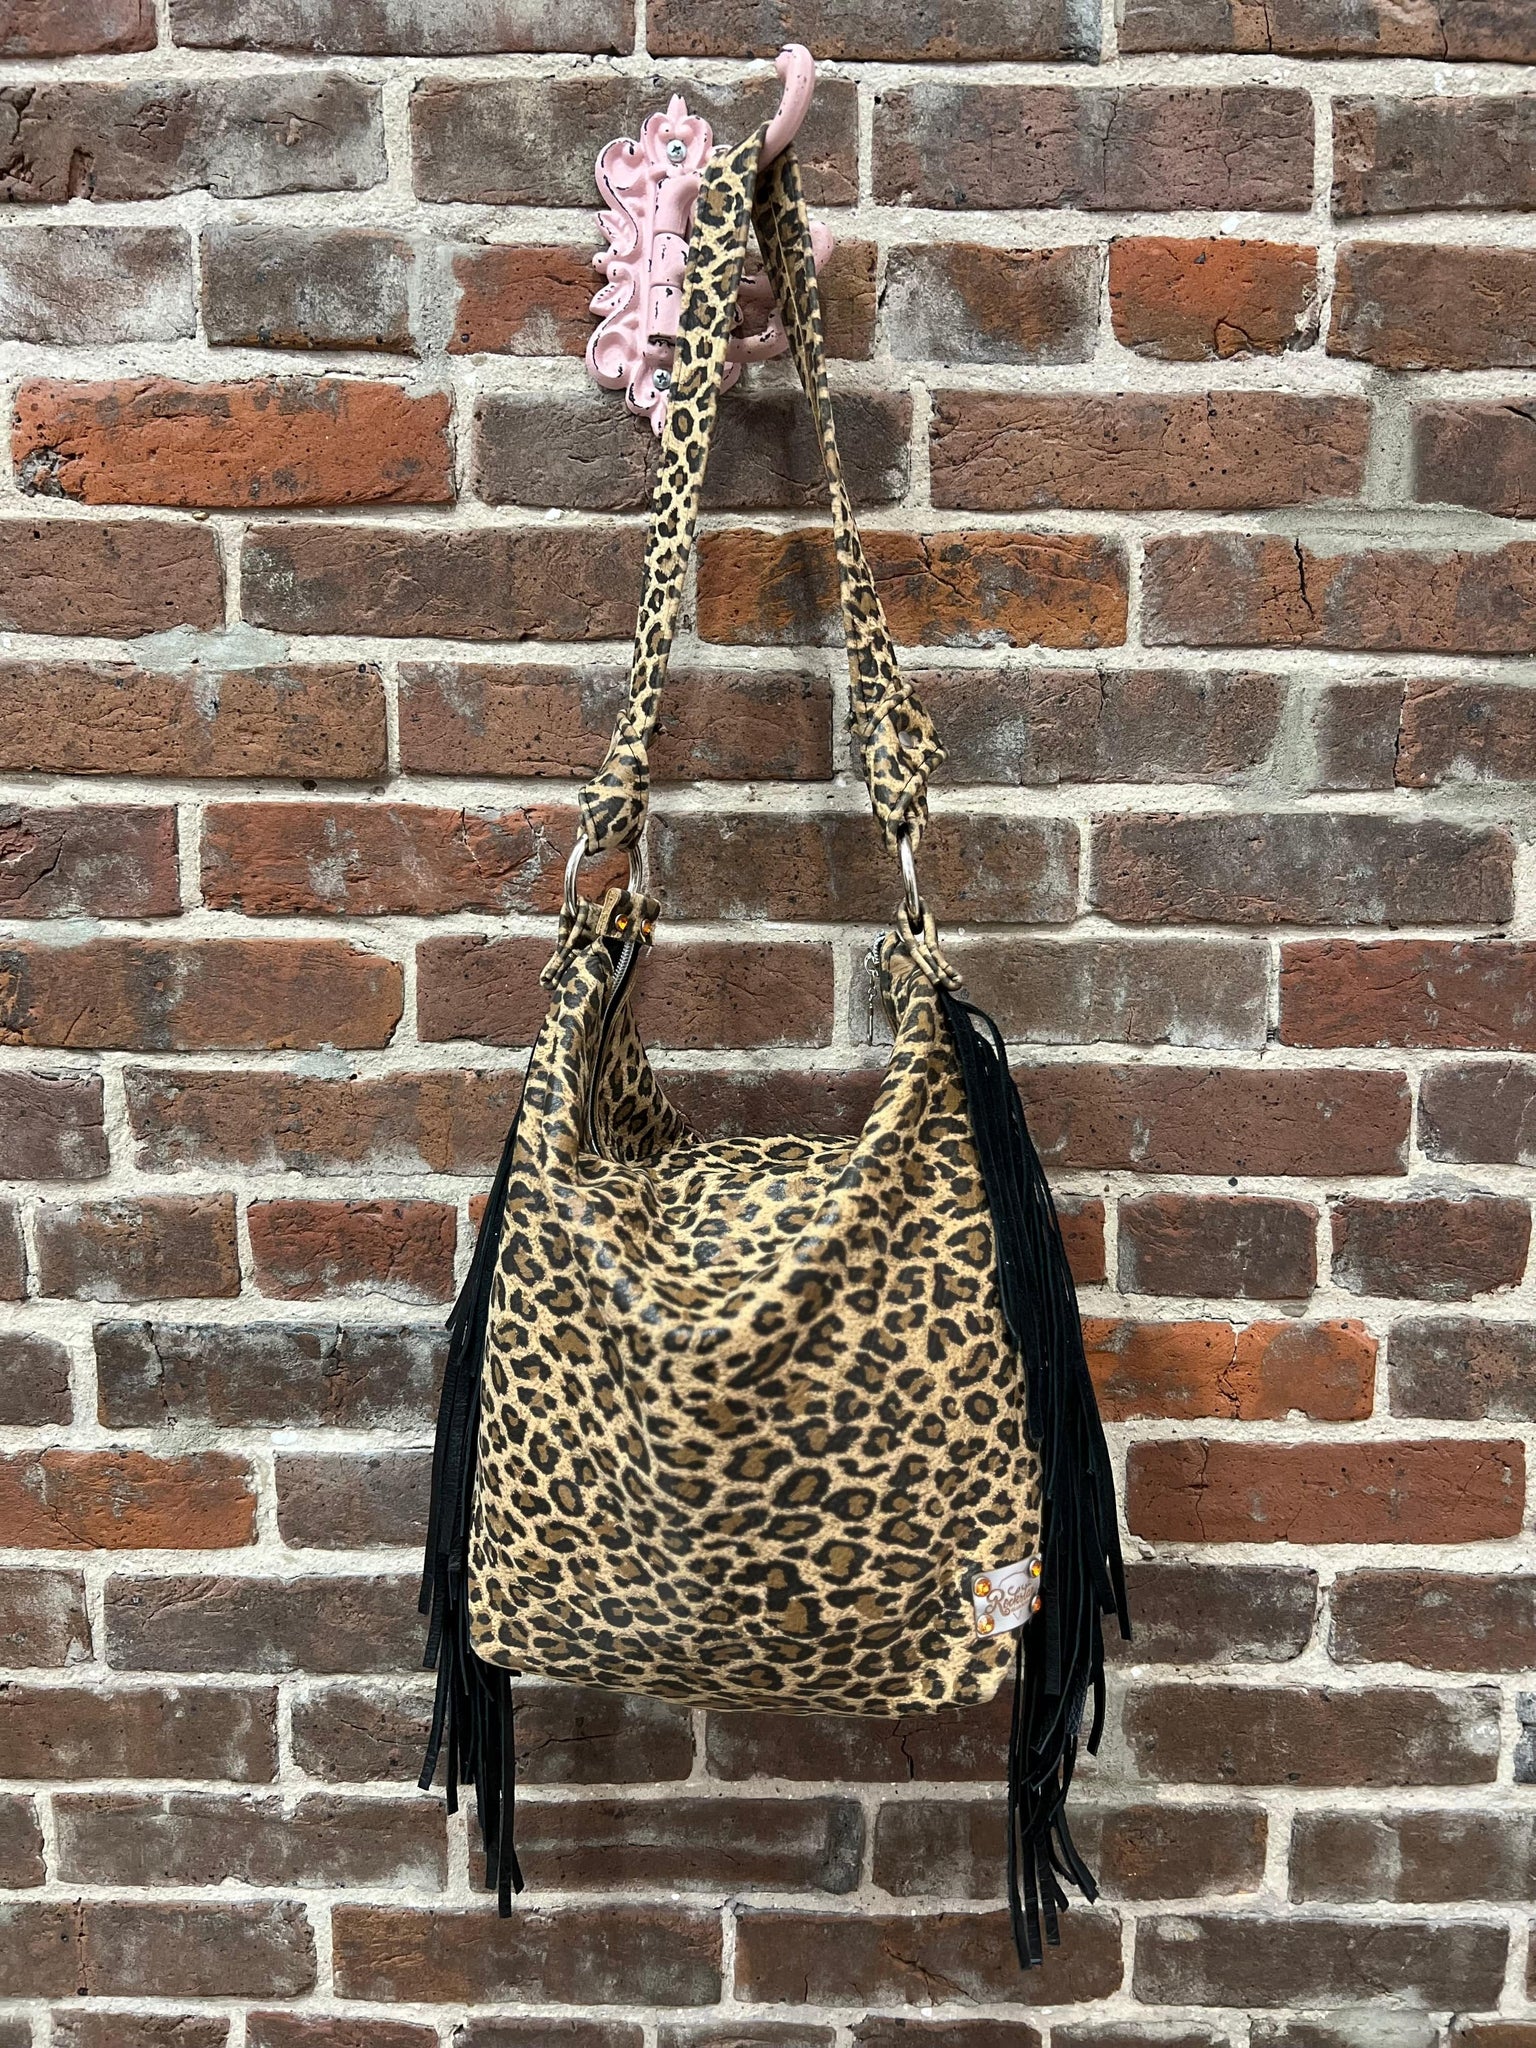 Rockstar Glam House Leopard Shoulder Bag The Sparkly Pig